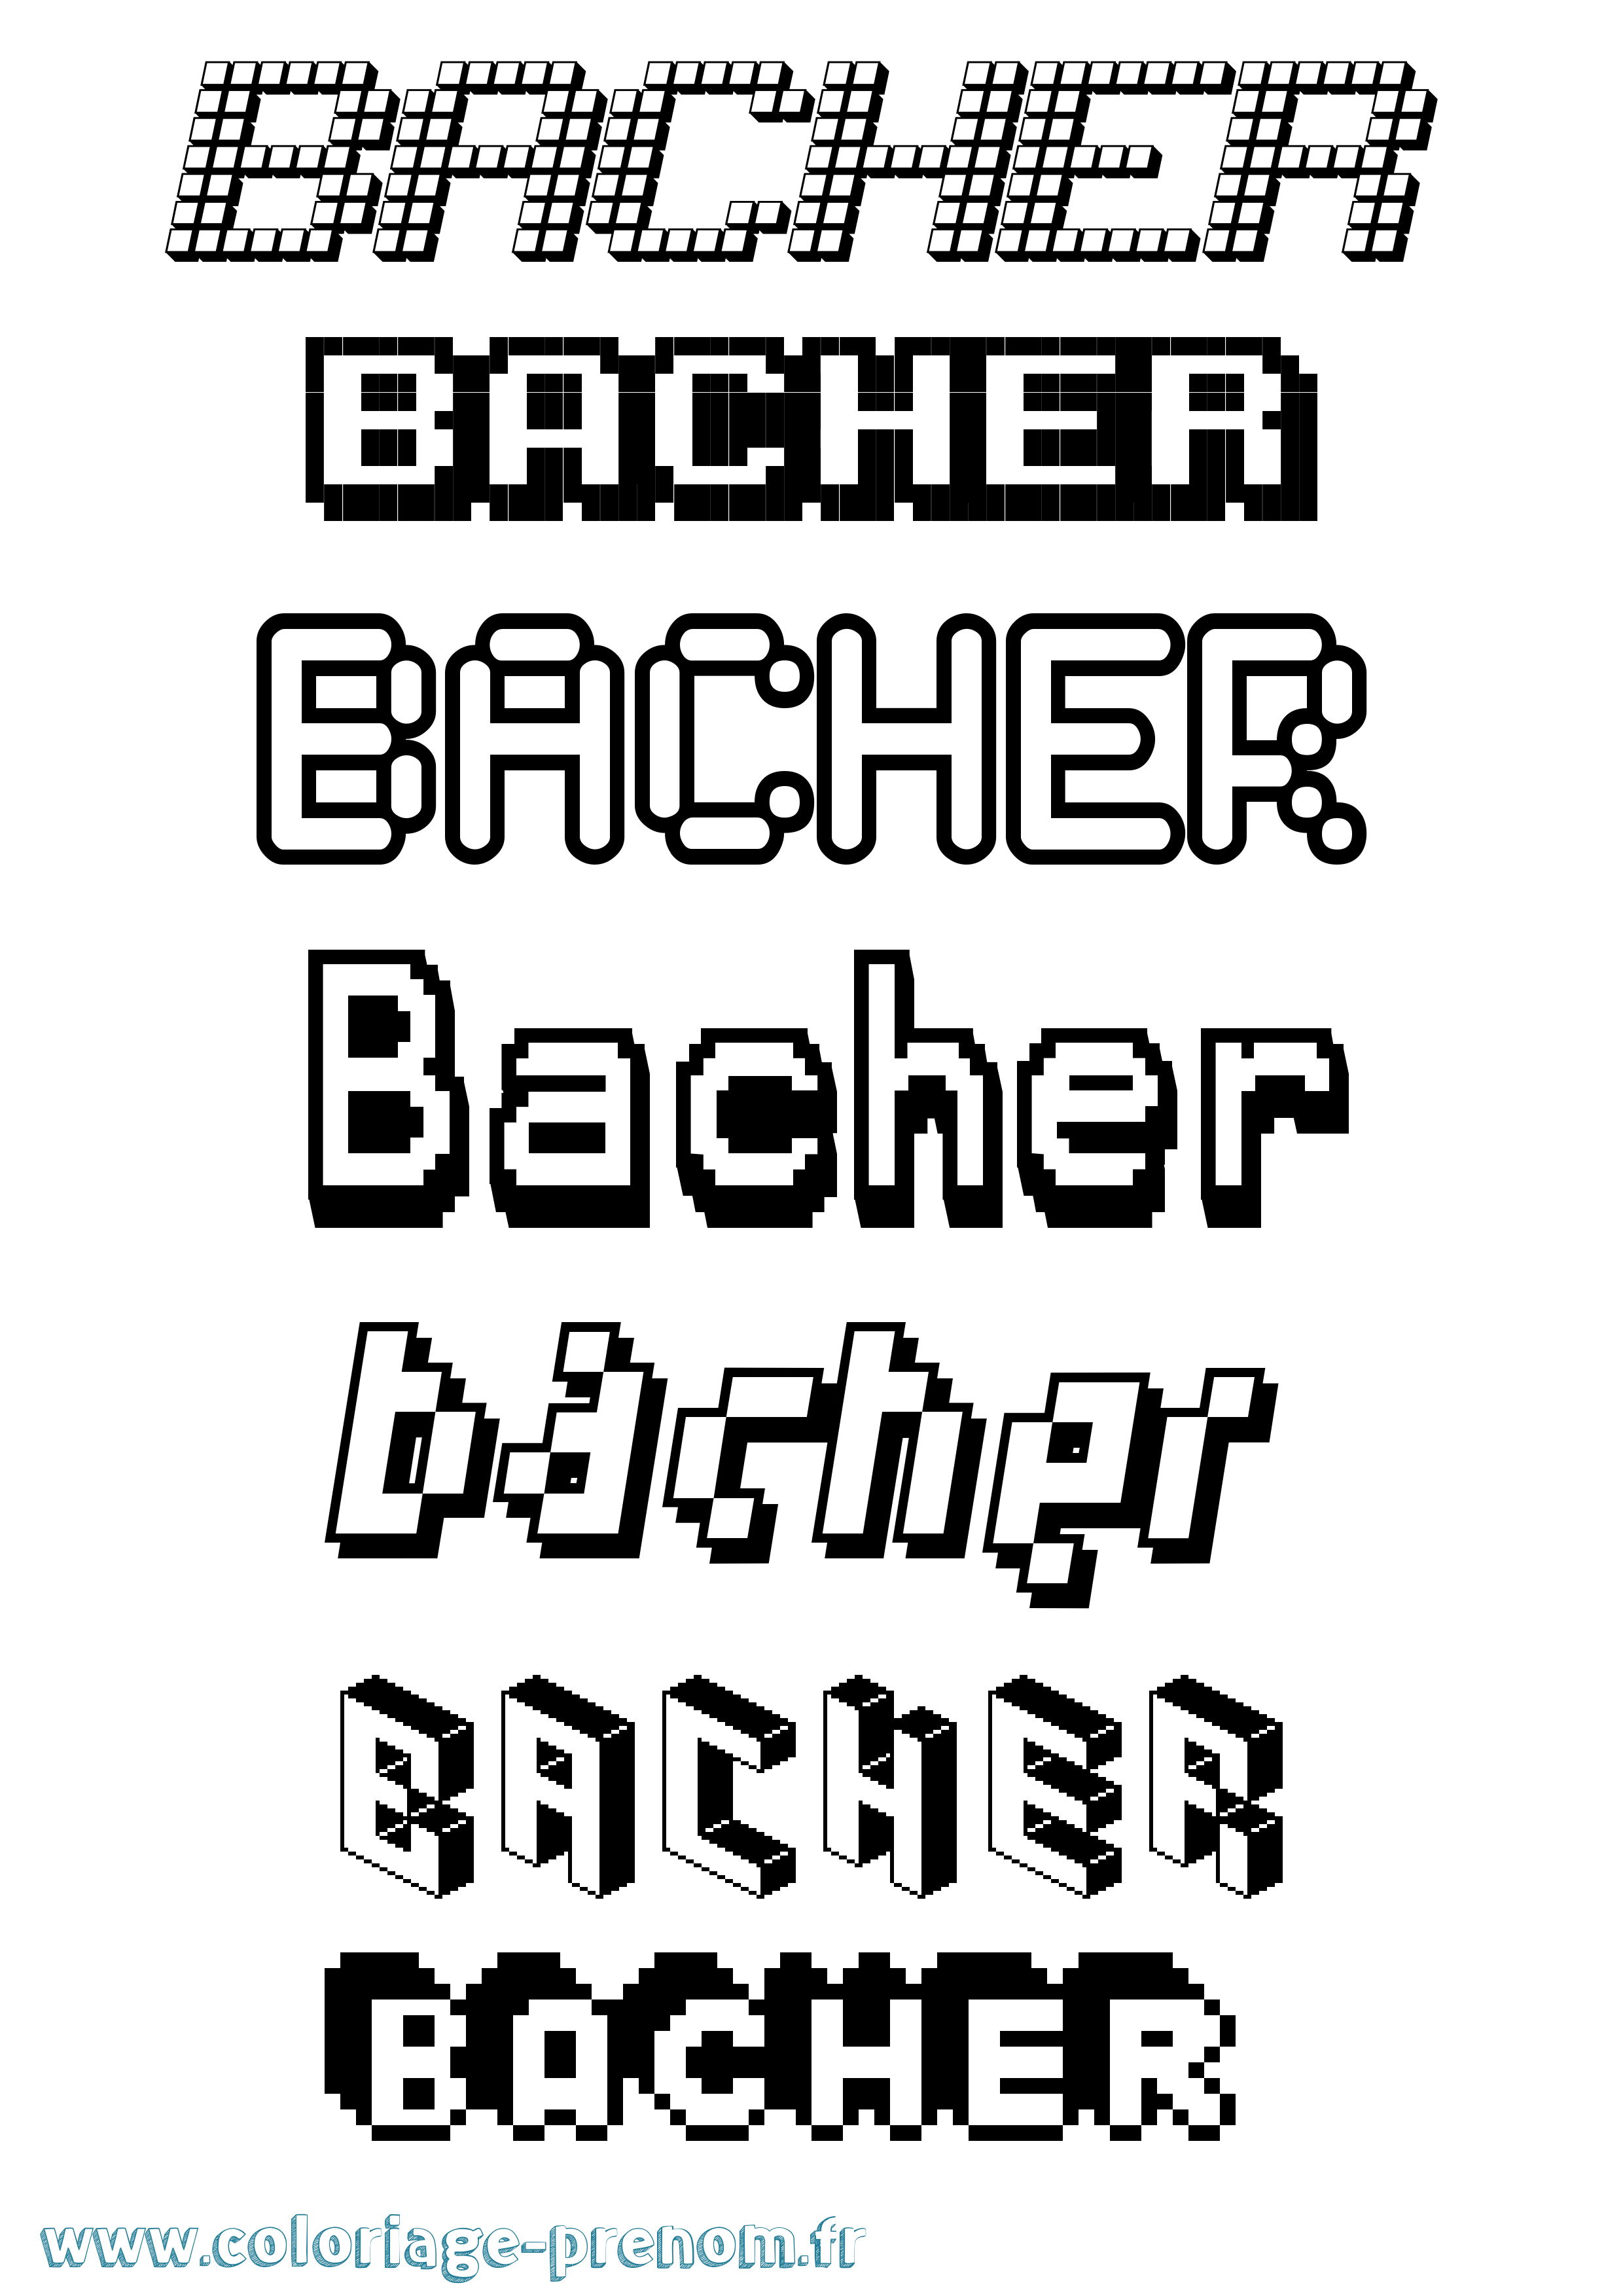 Coloriage prénom Bacher Pixel